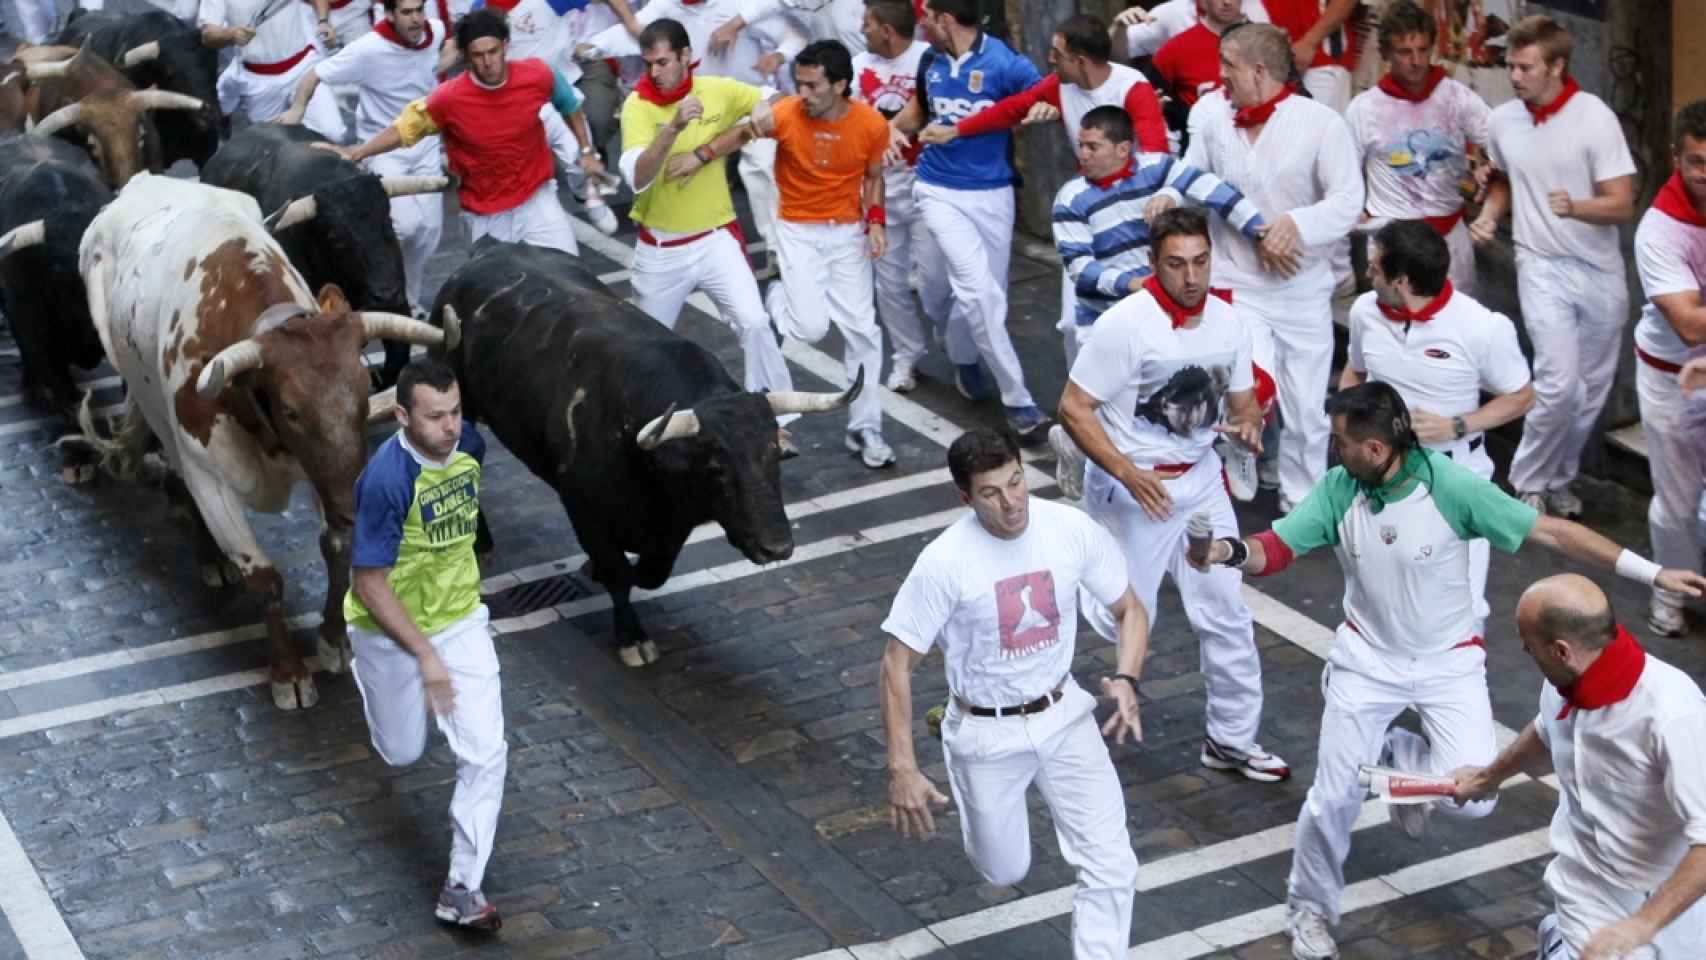 Побег от быка. Игра в Испании бегут от быка.